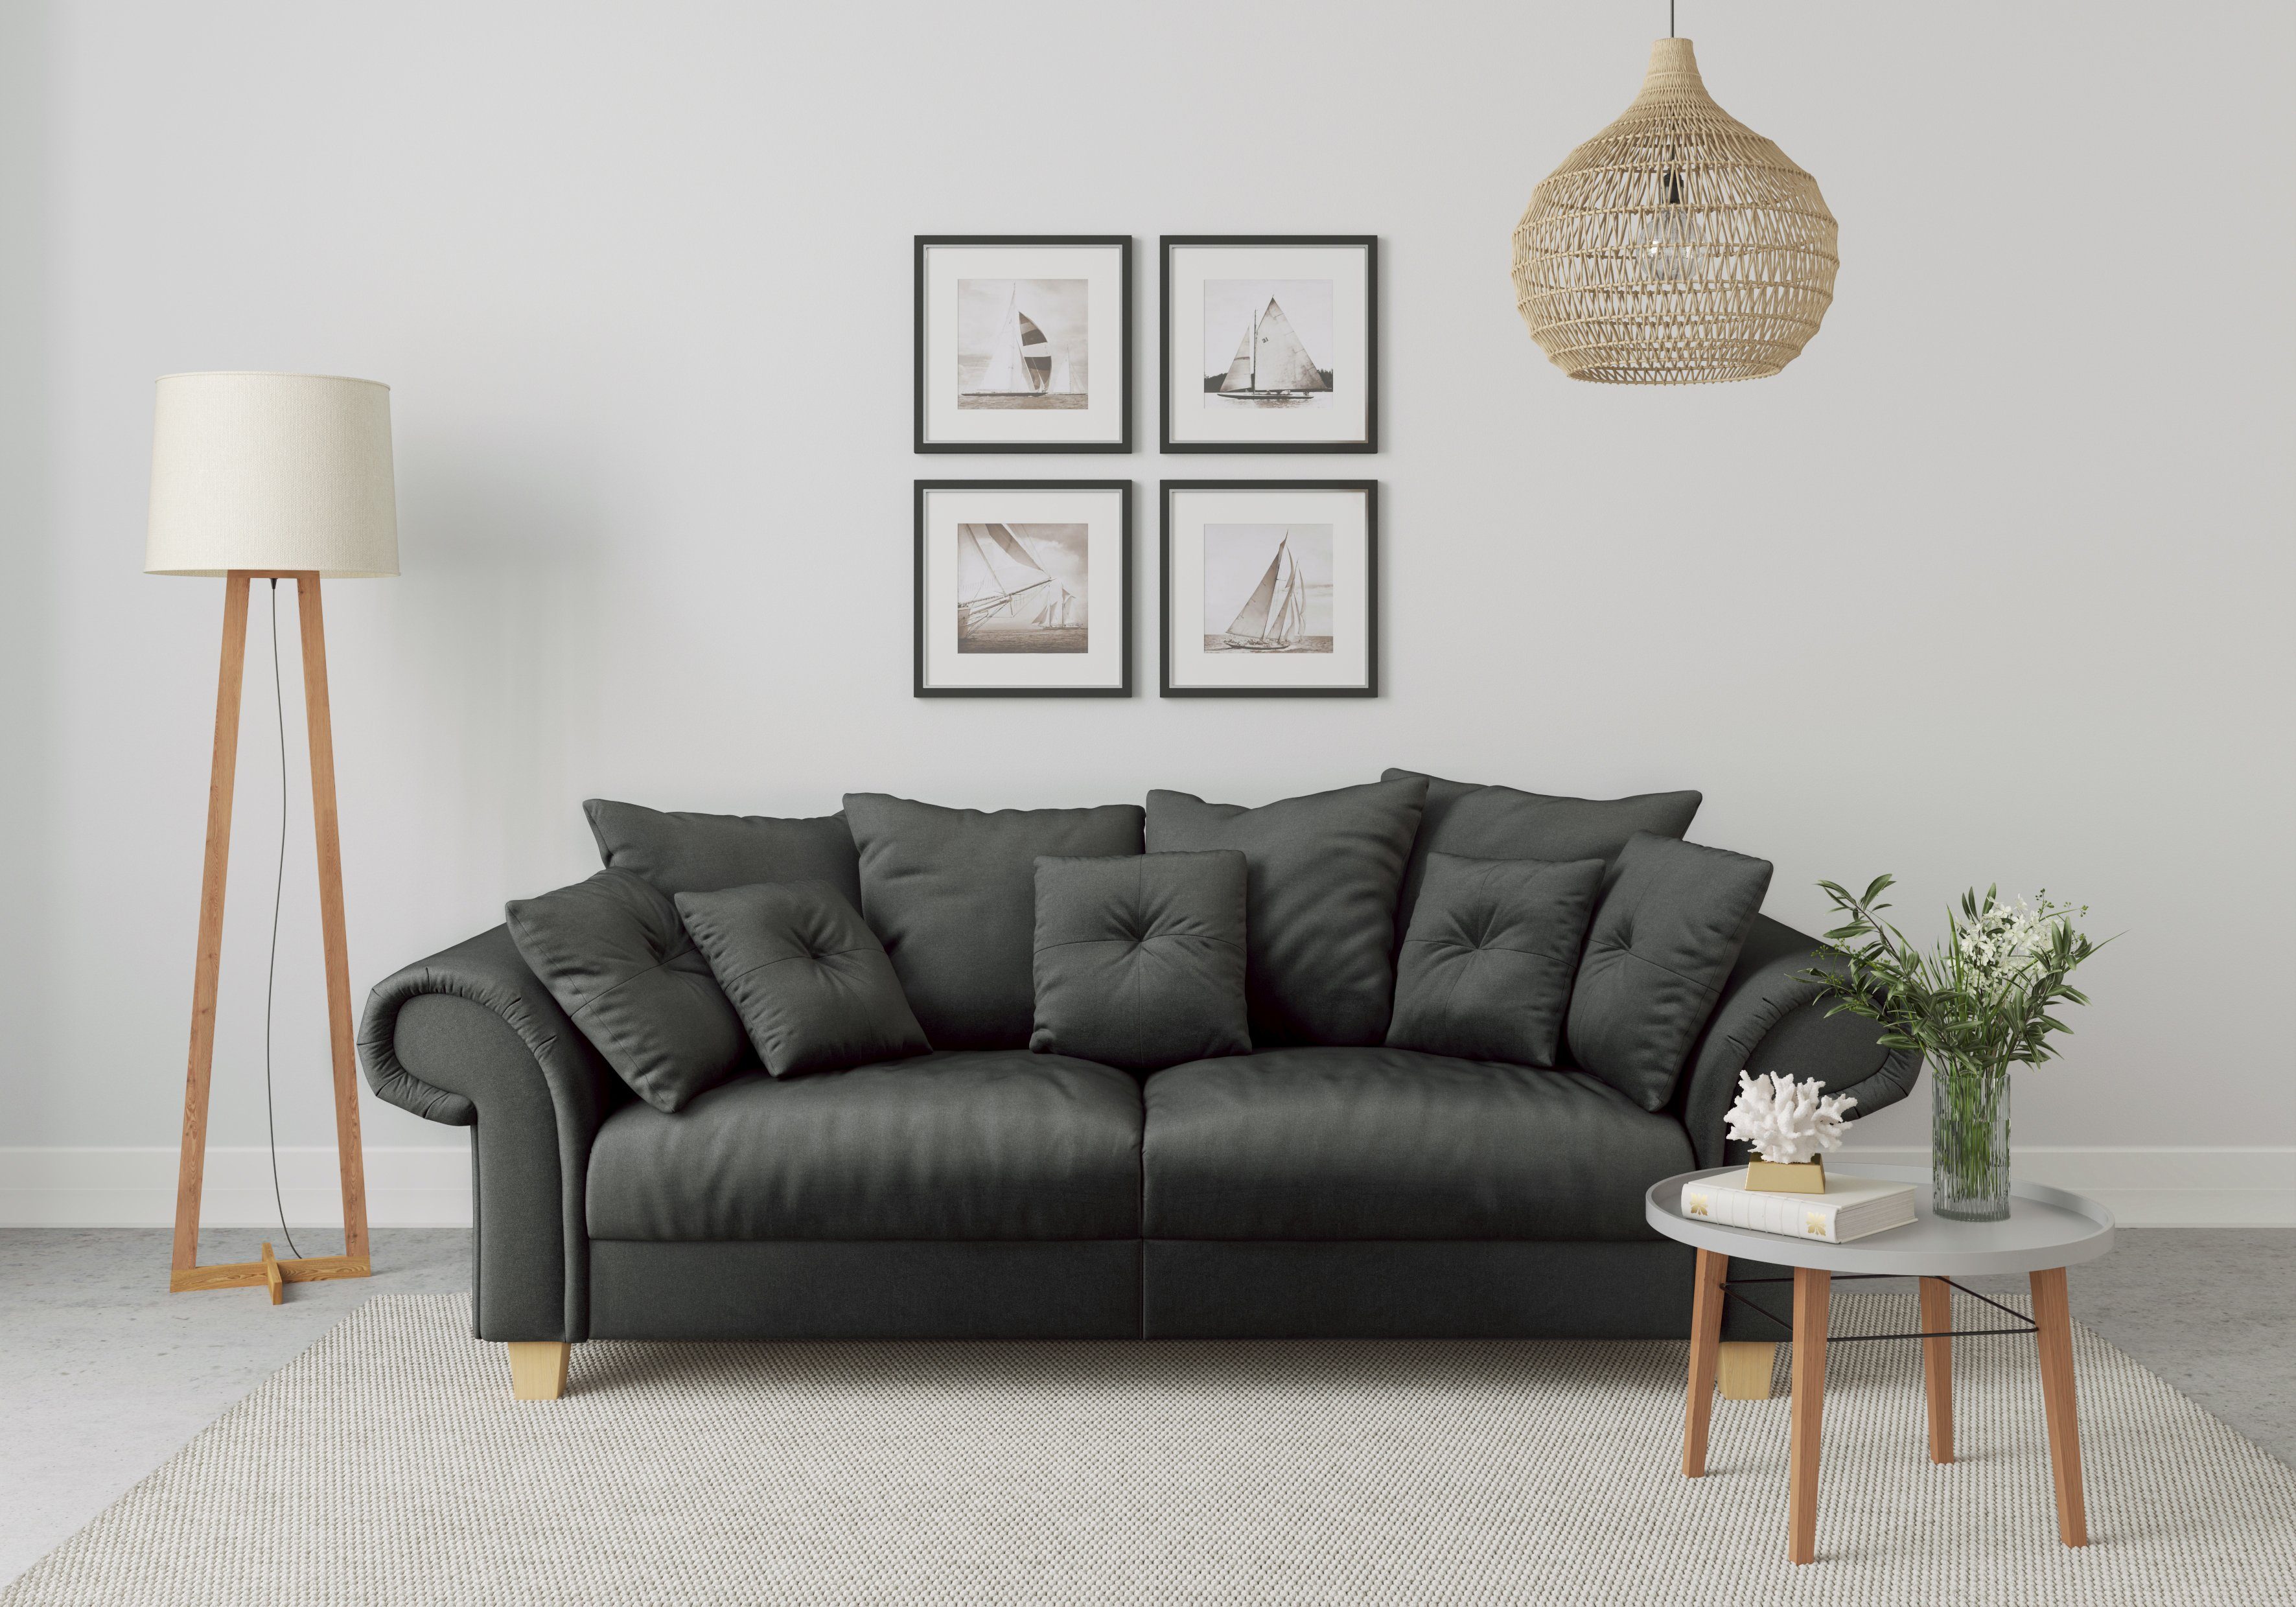 Home affaire Big-Sofa Queenie Megasofa, 2 Teile, mit weichem Sitzkomfort und zeitlosem Design, viele kuschelige Kissen